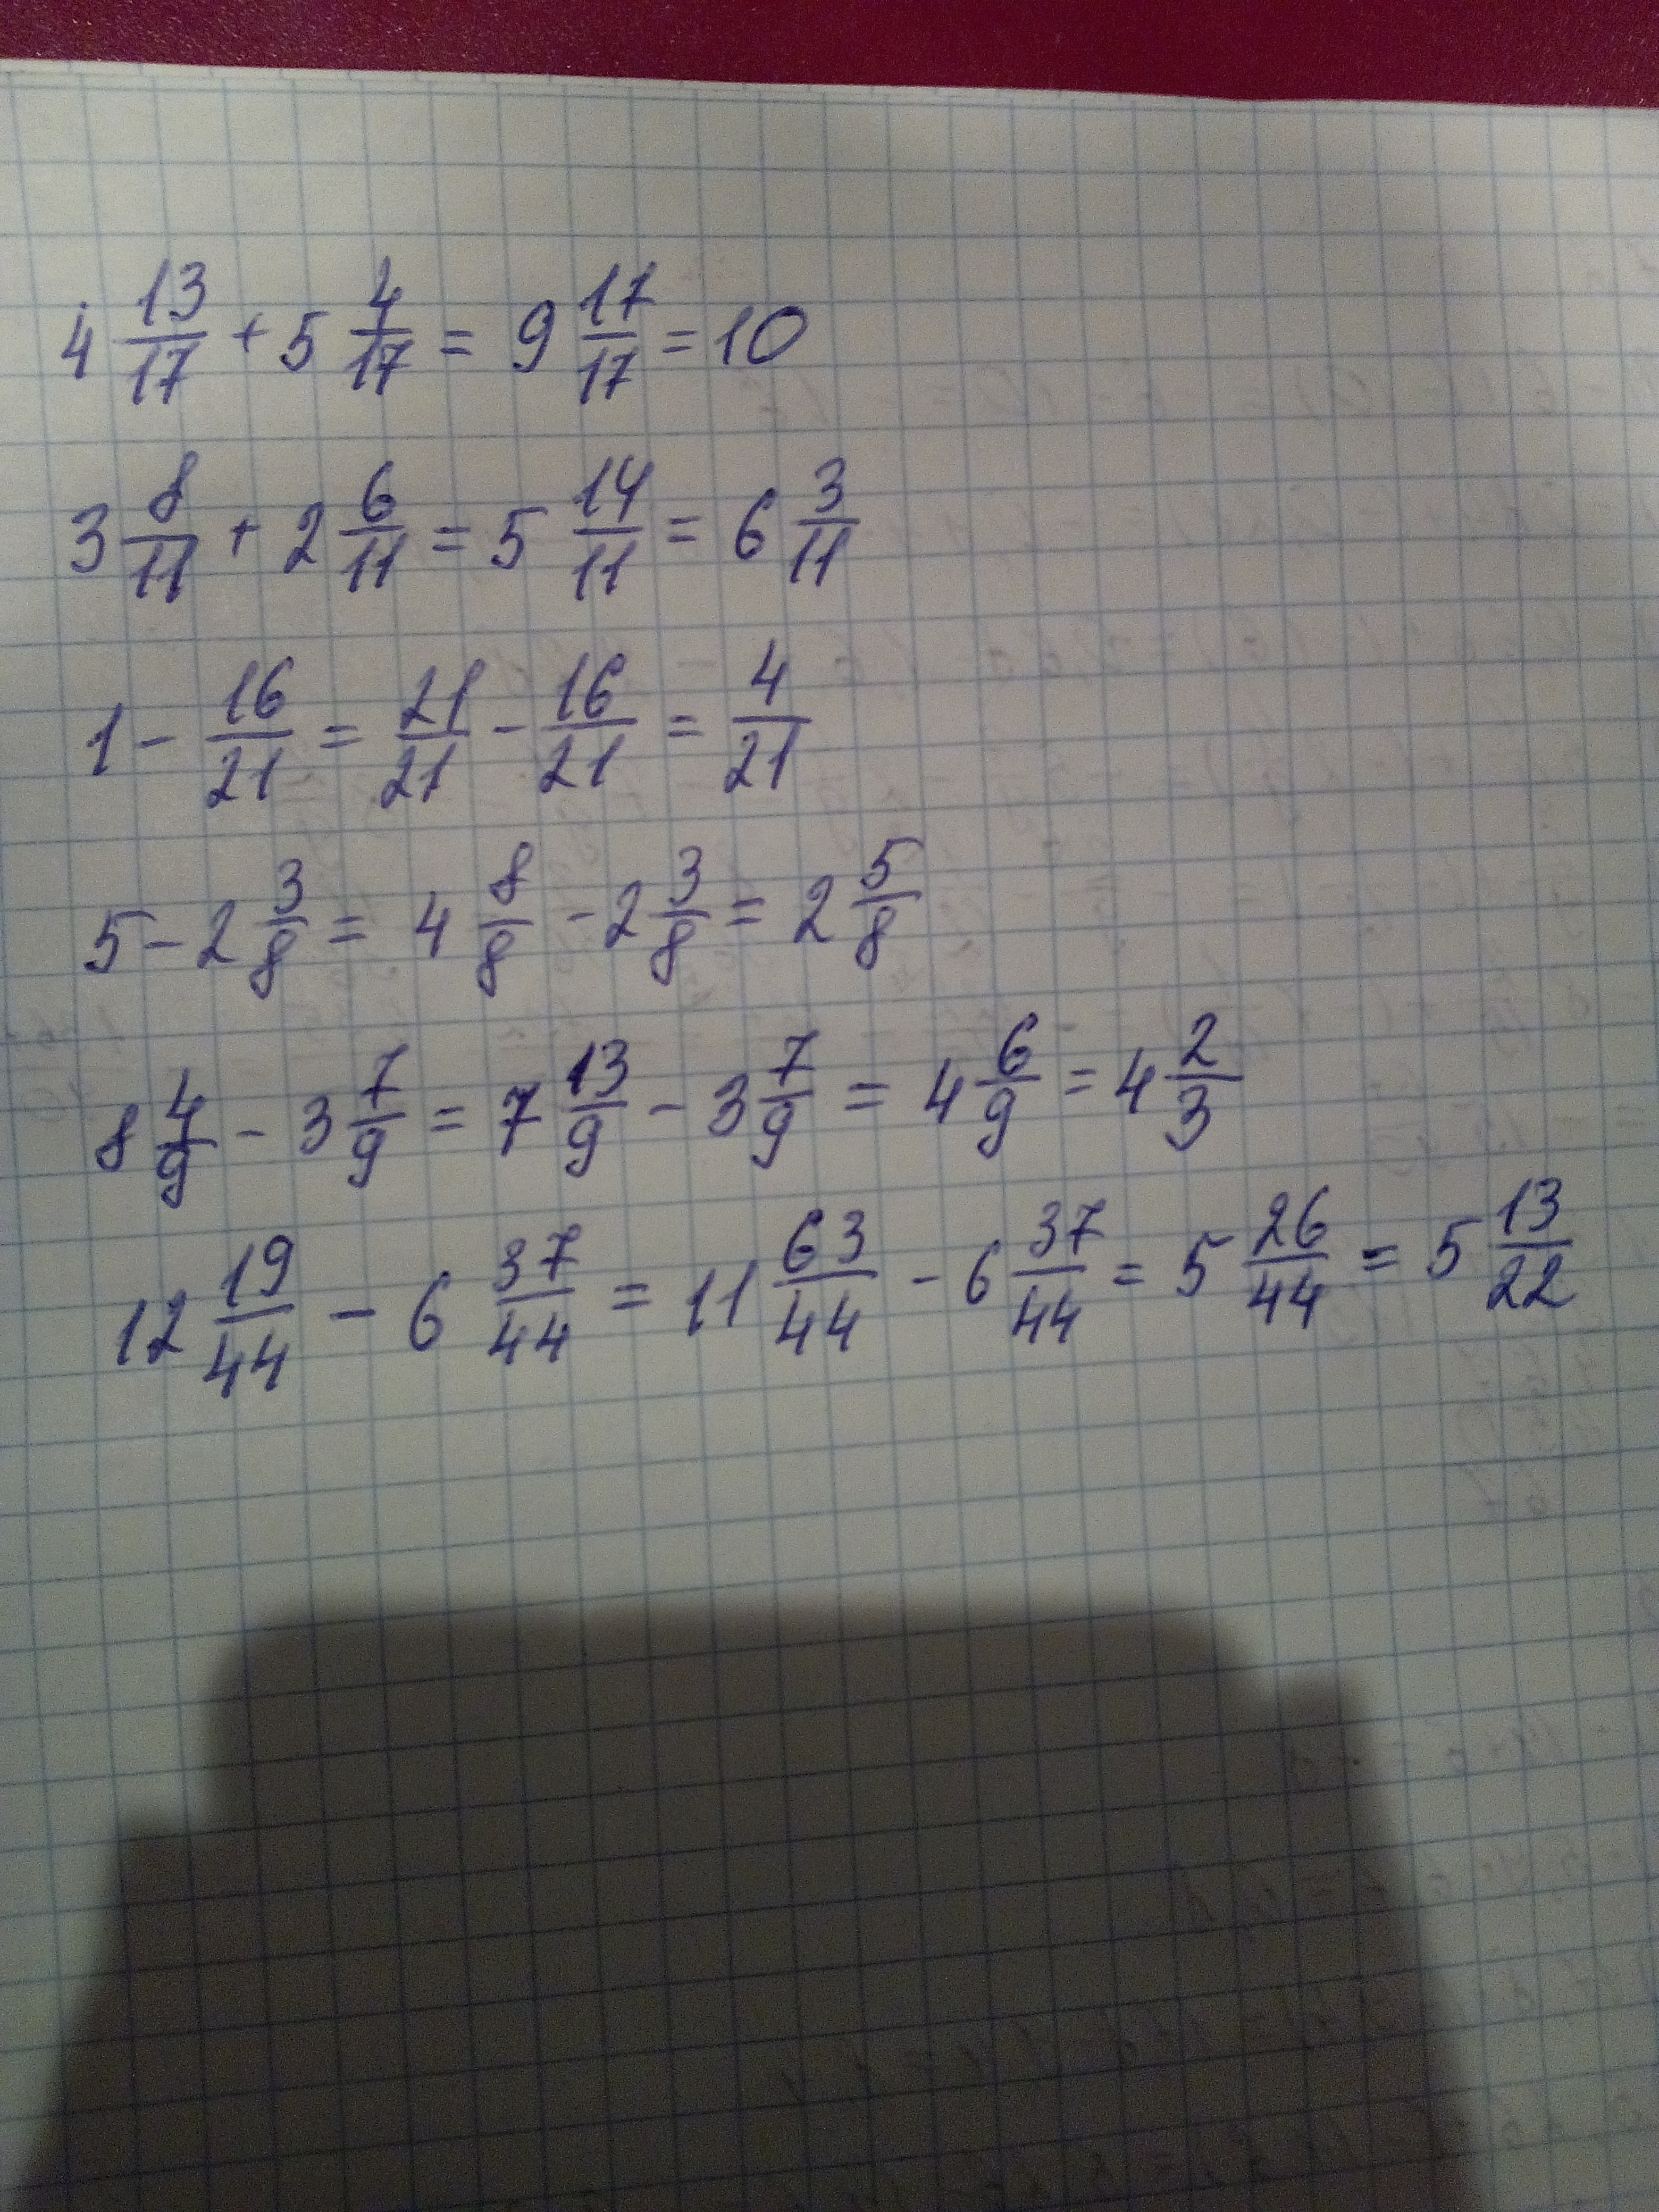 4 3 16 5 8. (5 1/16-1 1/8)×(5/6+3/15). (2/5-6,6) :(1 1/4- 11/3) Решение. (6 3/4-5 2/5) +(3 4/5+2 1/5) Решение. (9-2 3/11)+(2+1 9/11) Решение.